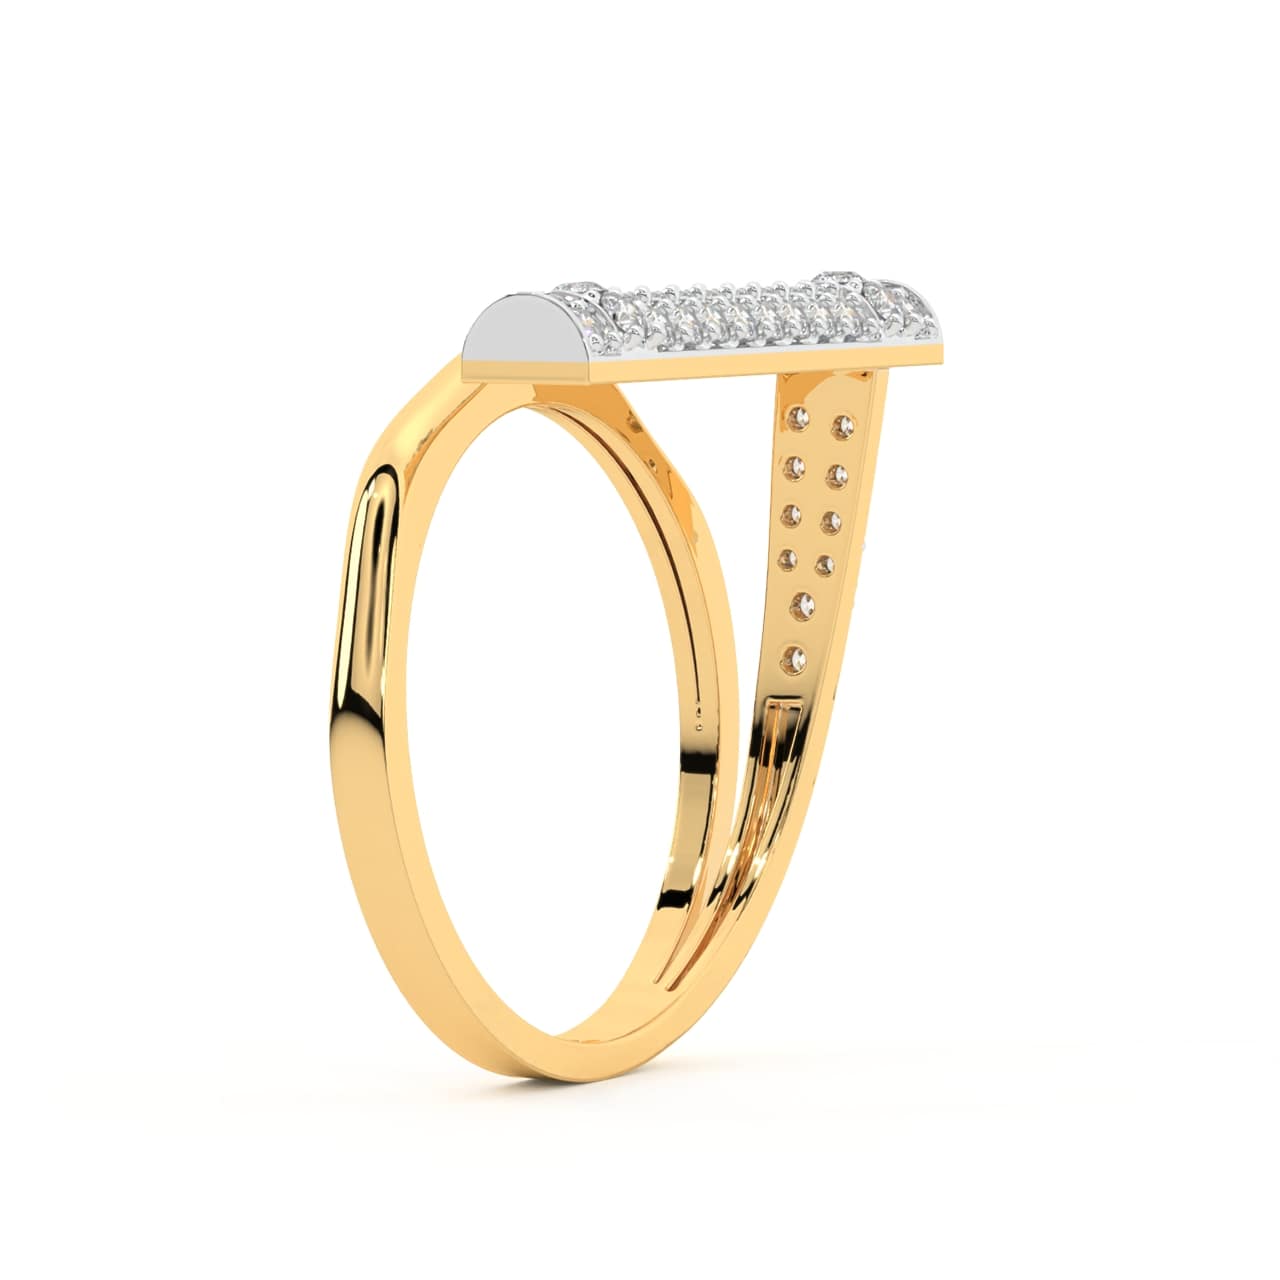 Zabdi Round Diamond Engagement Ring